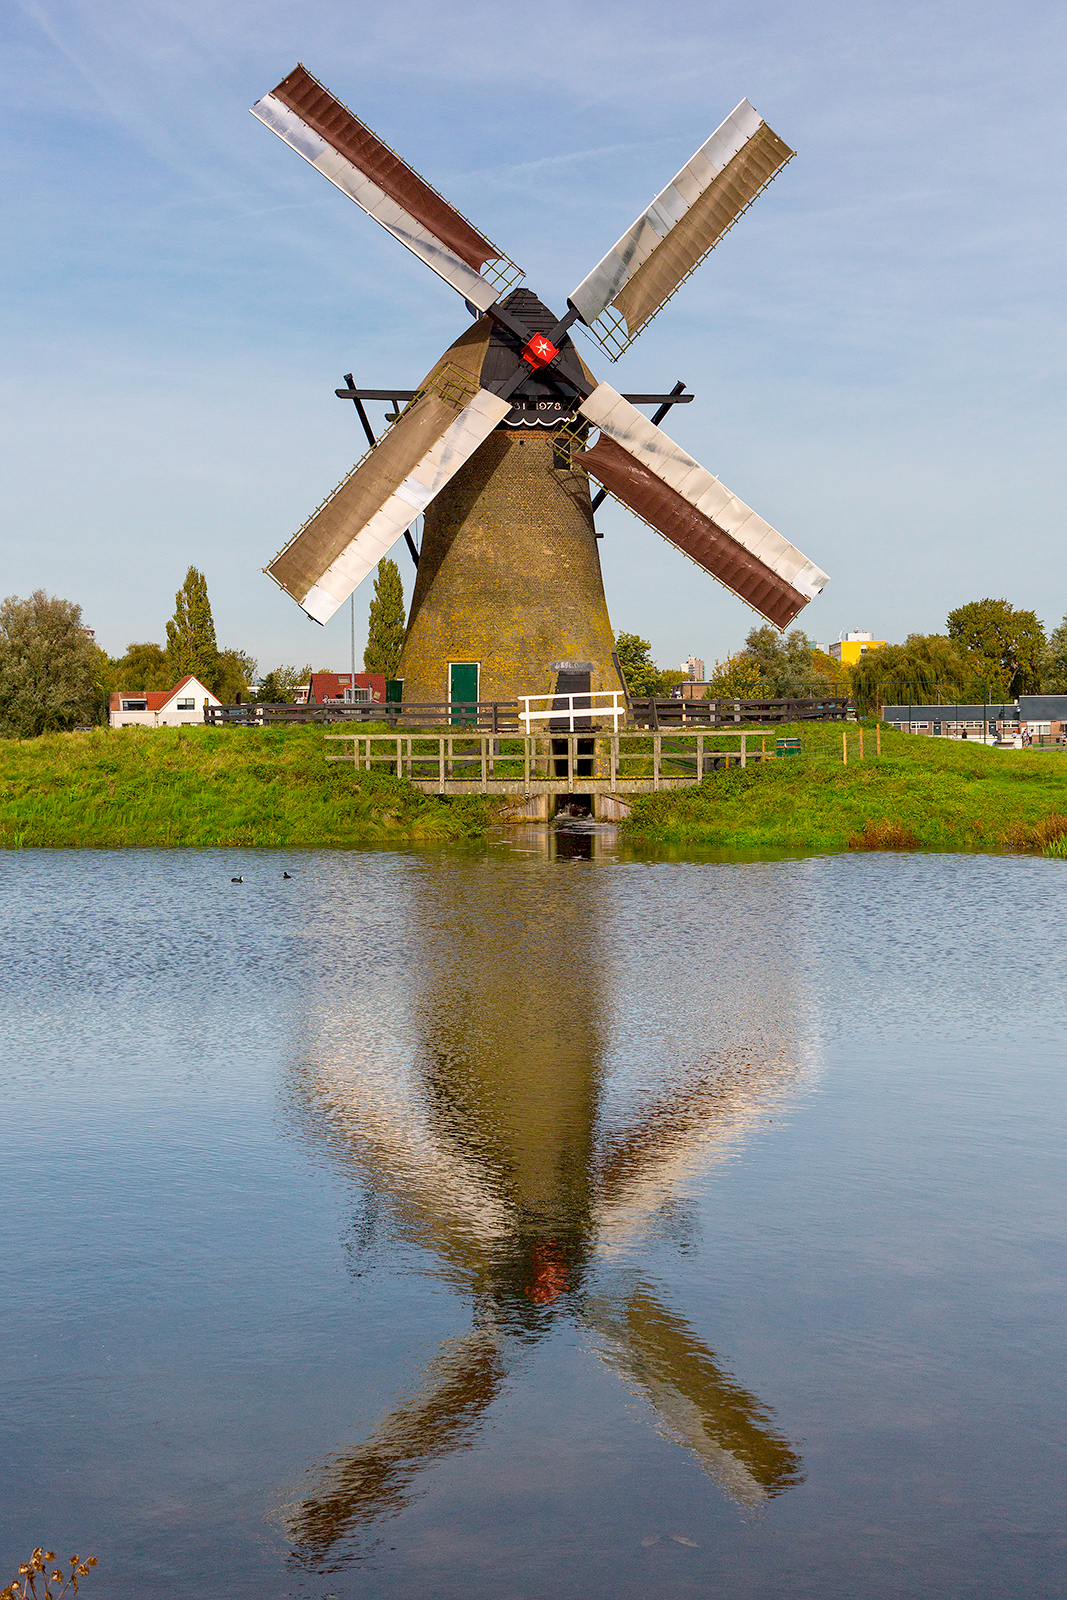 Foto van Pendrechtse Molen, Barendrecht, Bram van Broekhoven (18-10-2014) | Database Nederlandse molens